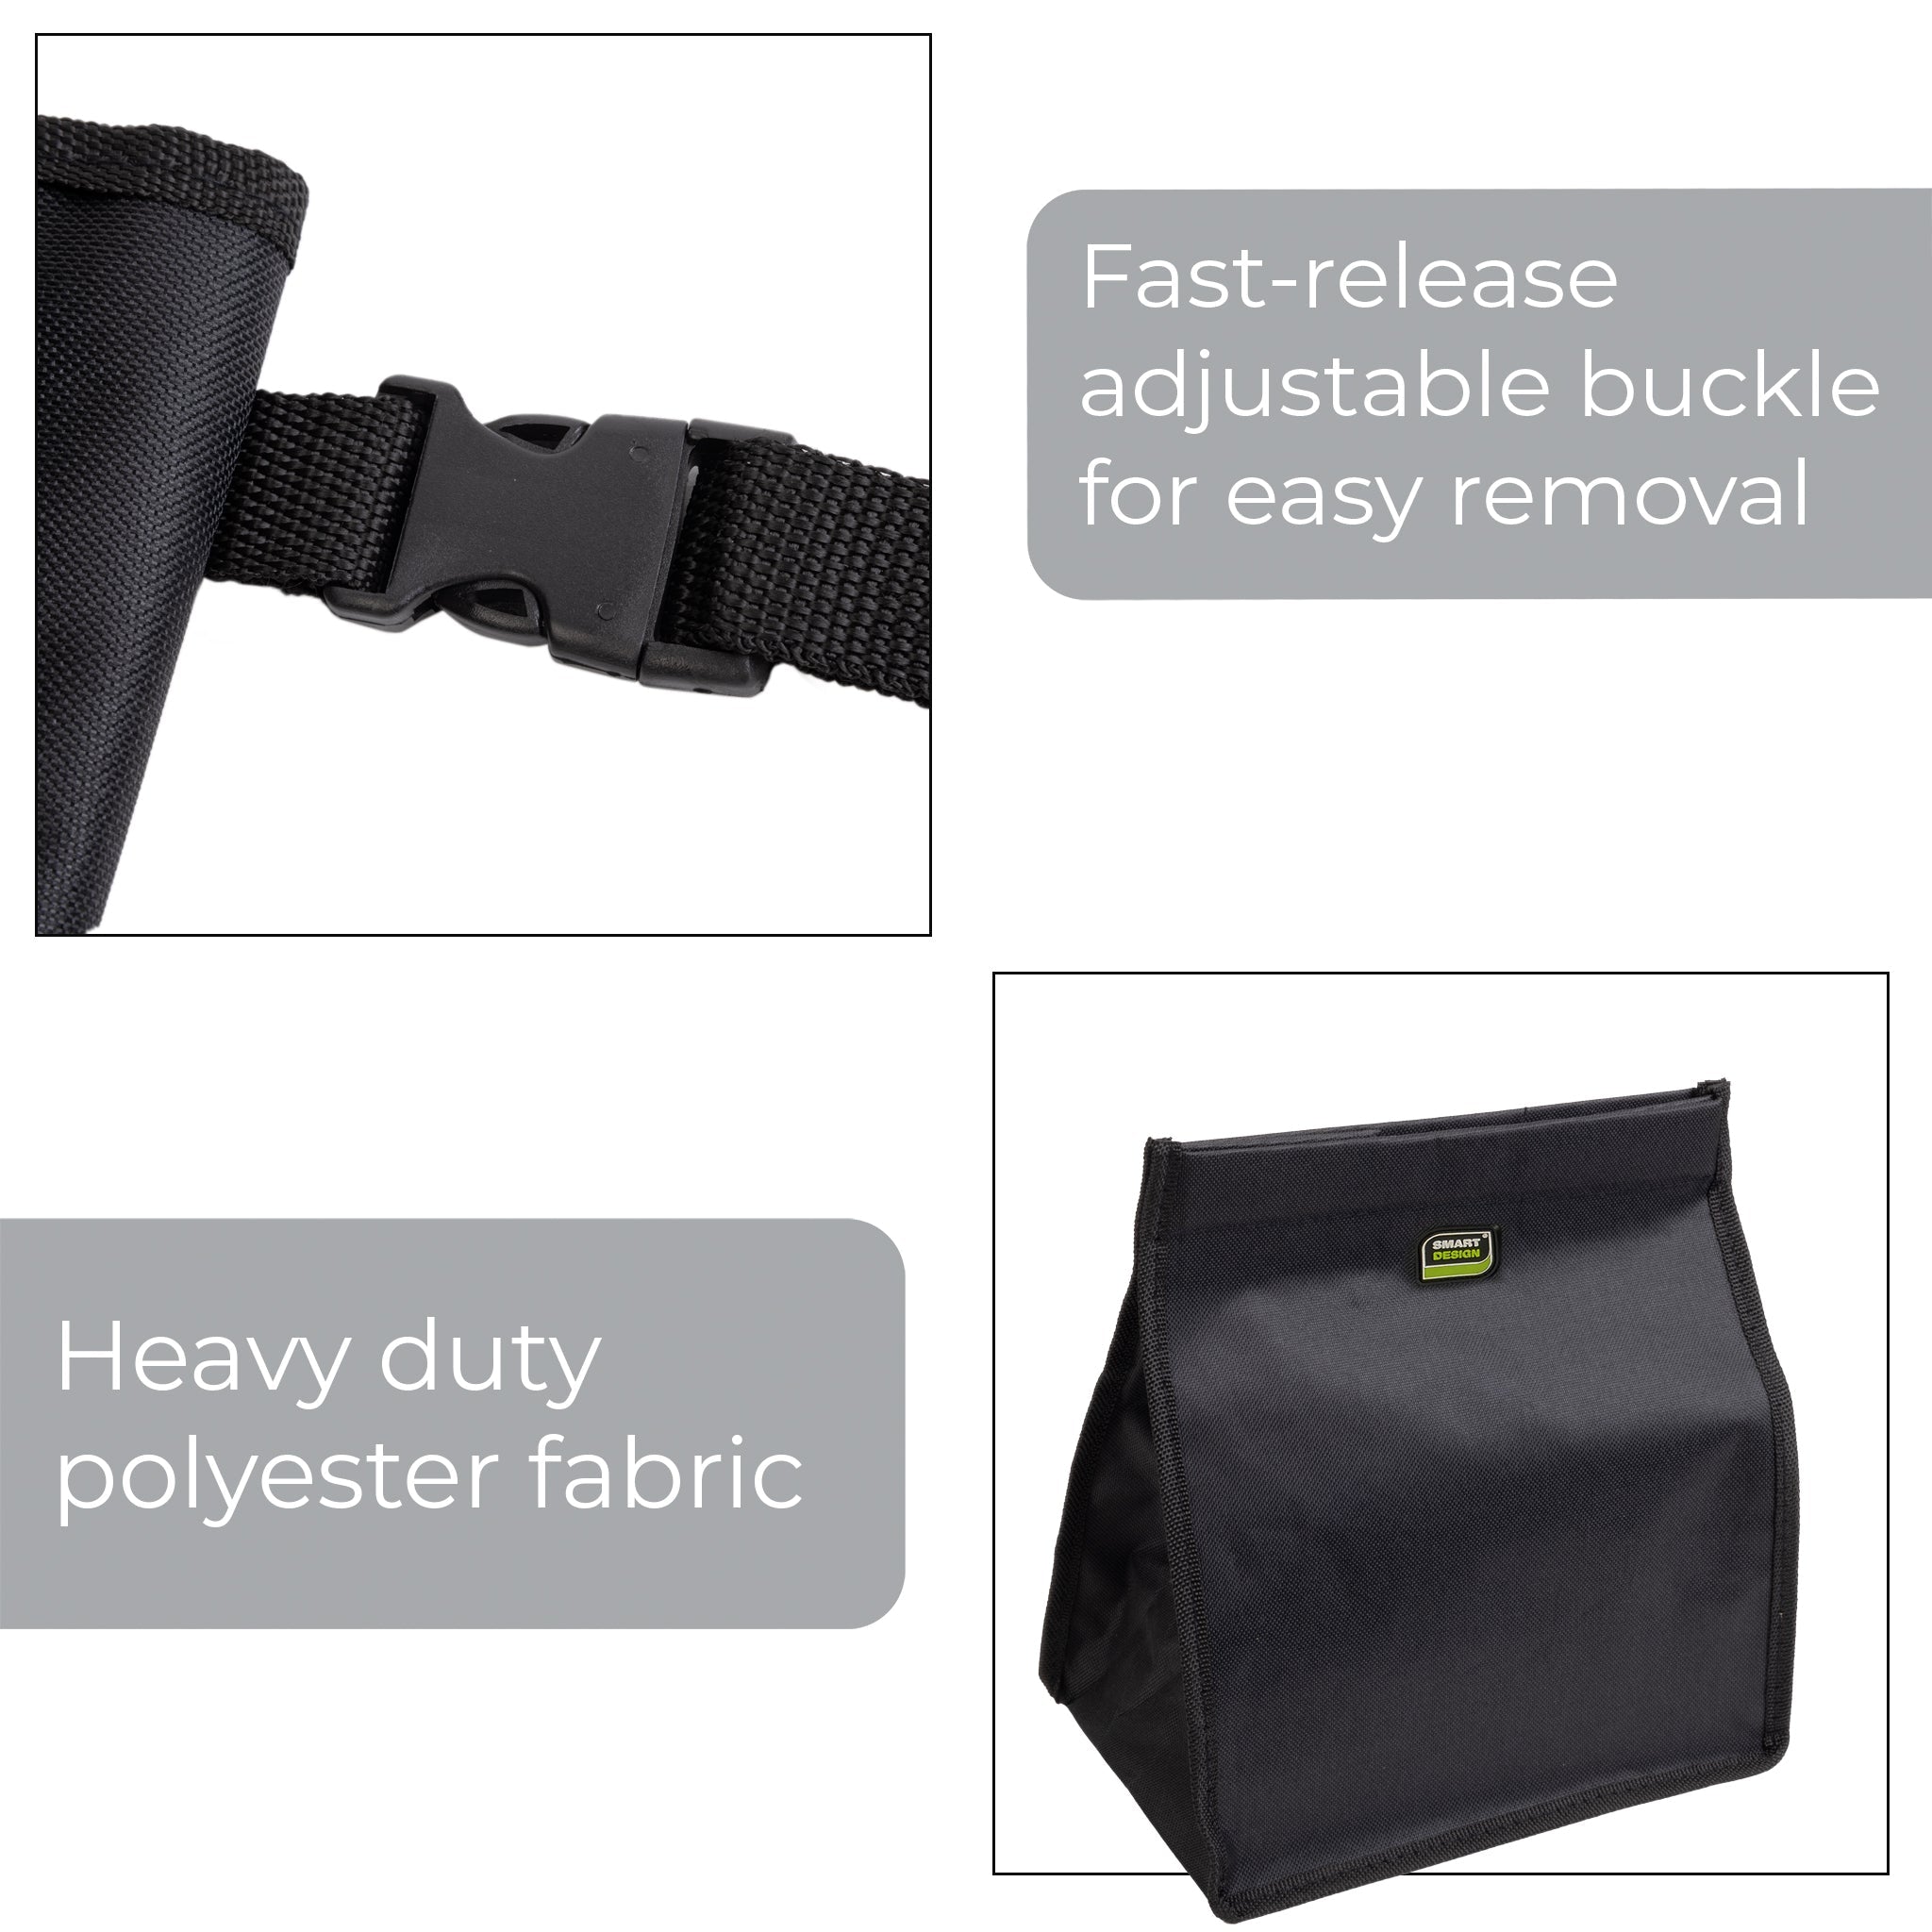 Vehicle Waste Bag with Adjustable Strap - Black - Smart Design® 5